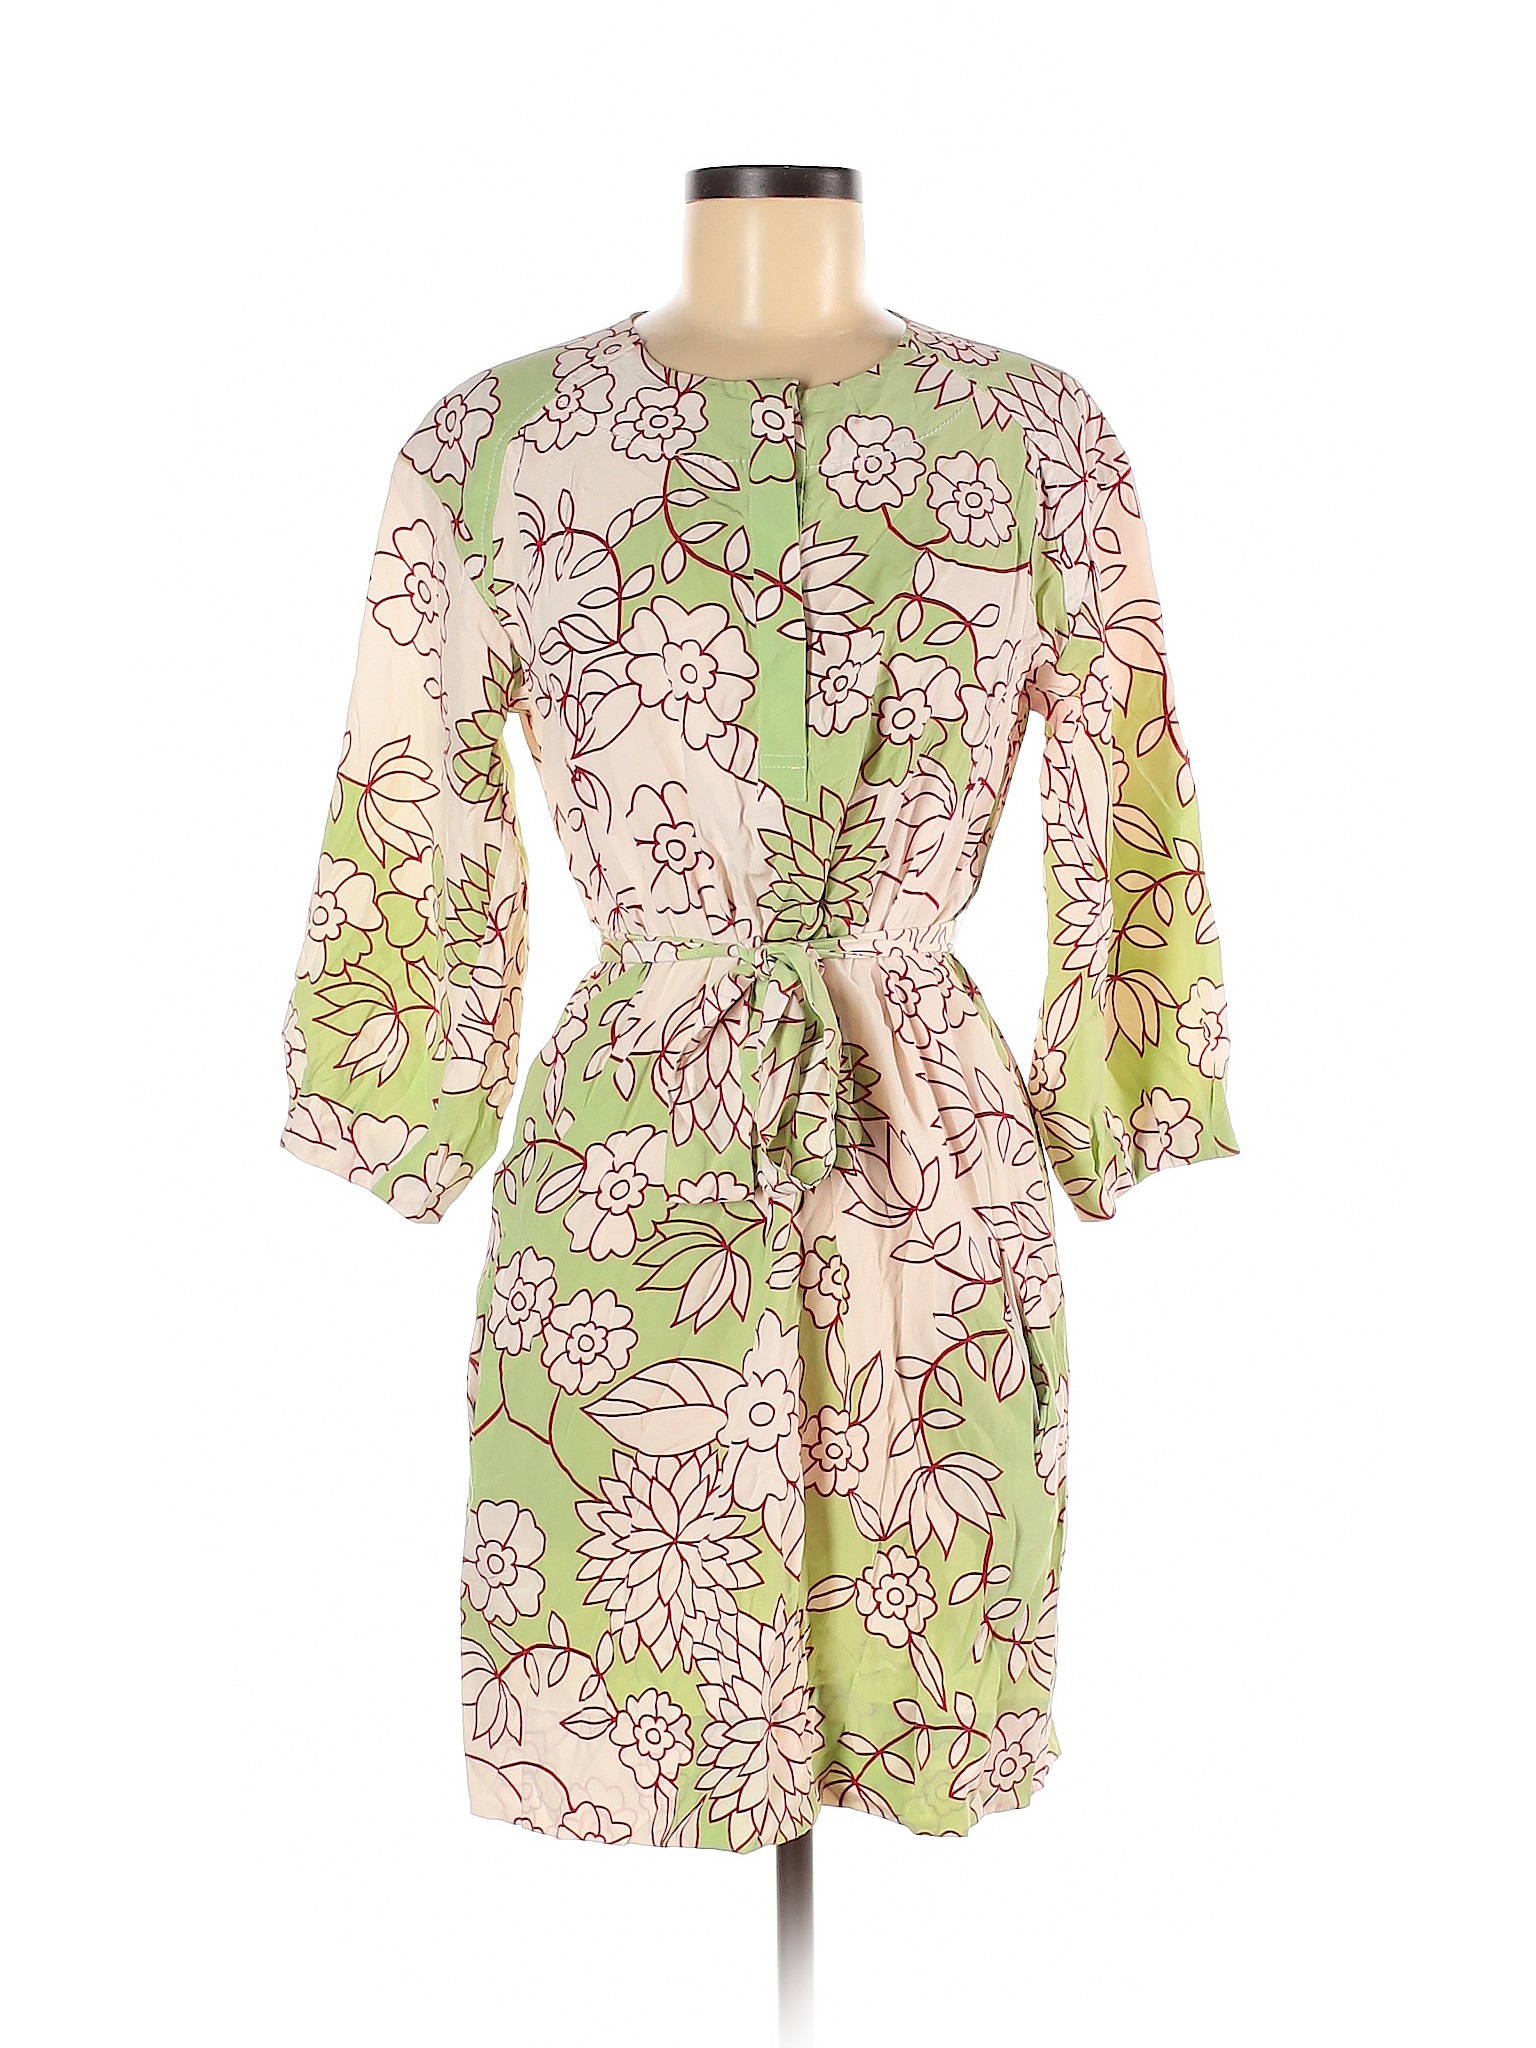 Diane von Furstenberg Women Green Casual Dress 6 | eBay